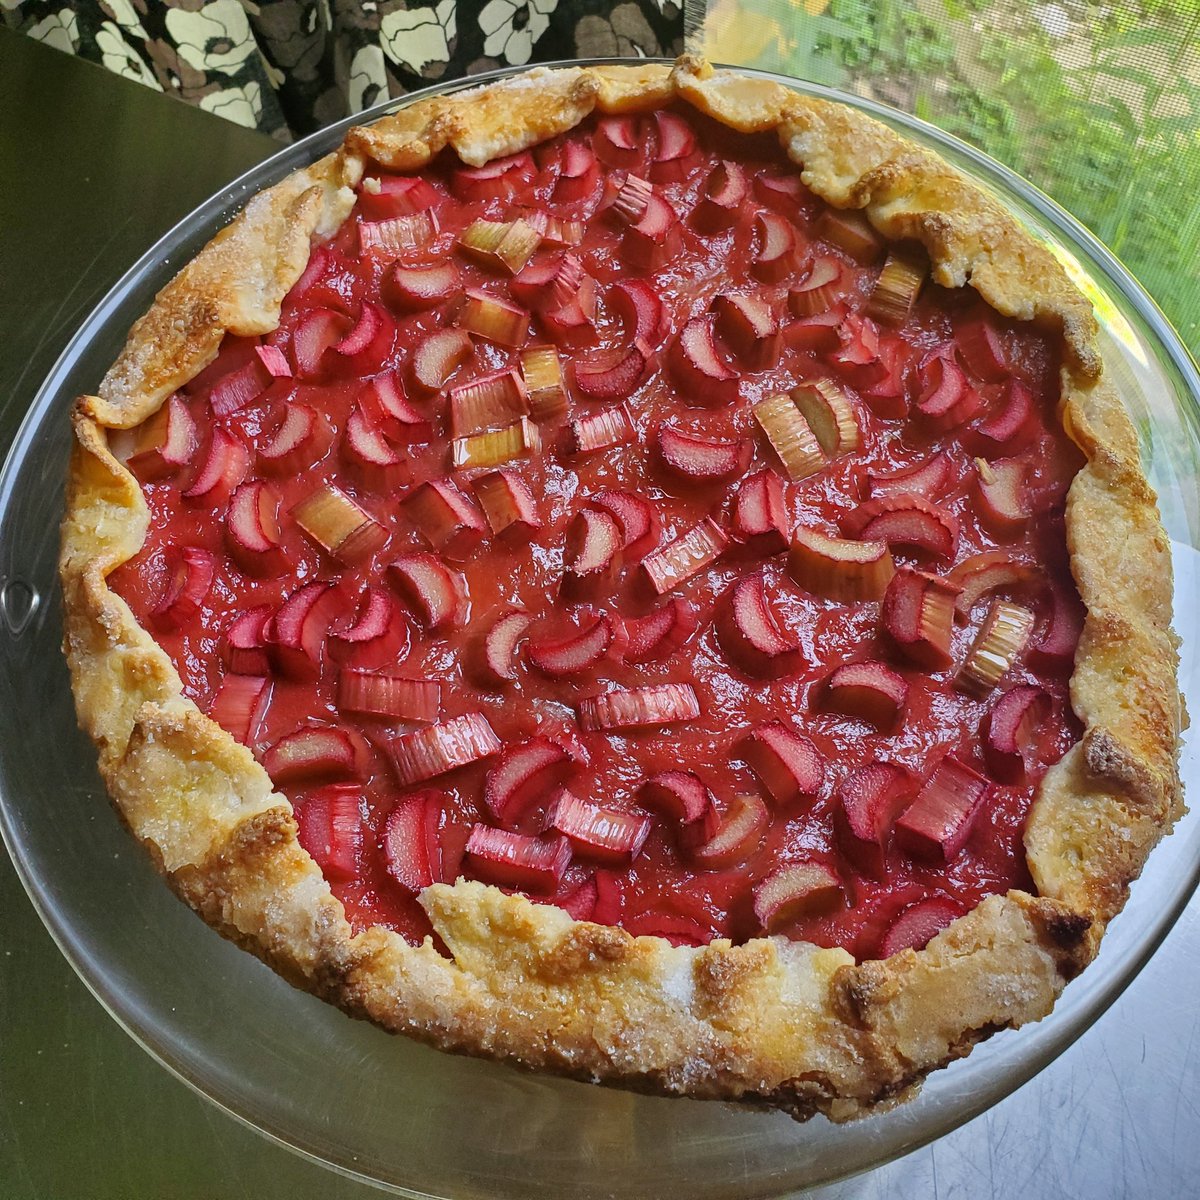 Who wants a slice of rhubarb tart? #food #cooking #baking #foodpoll